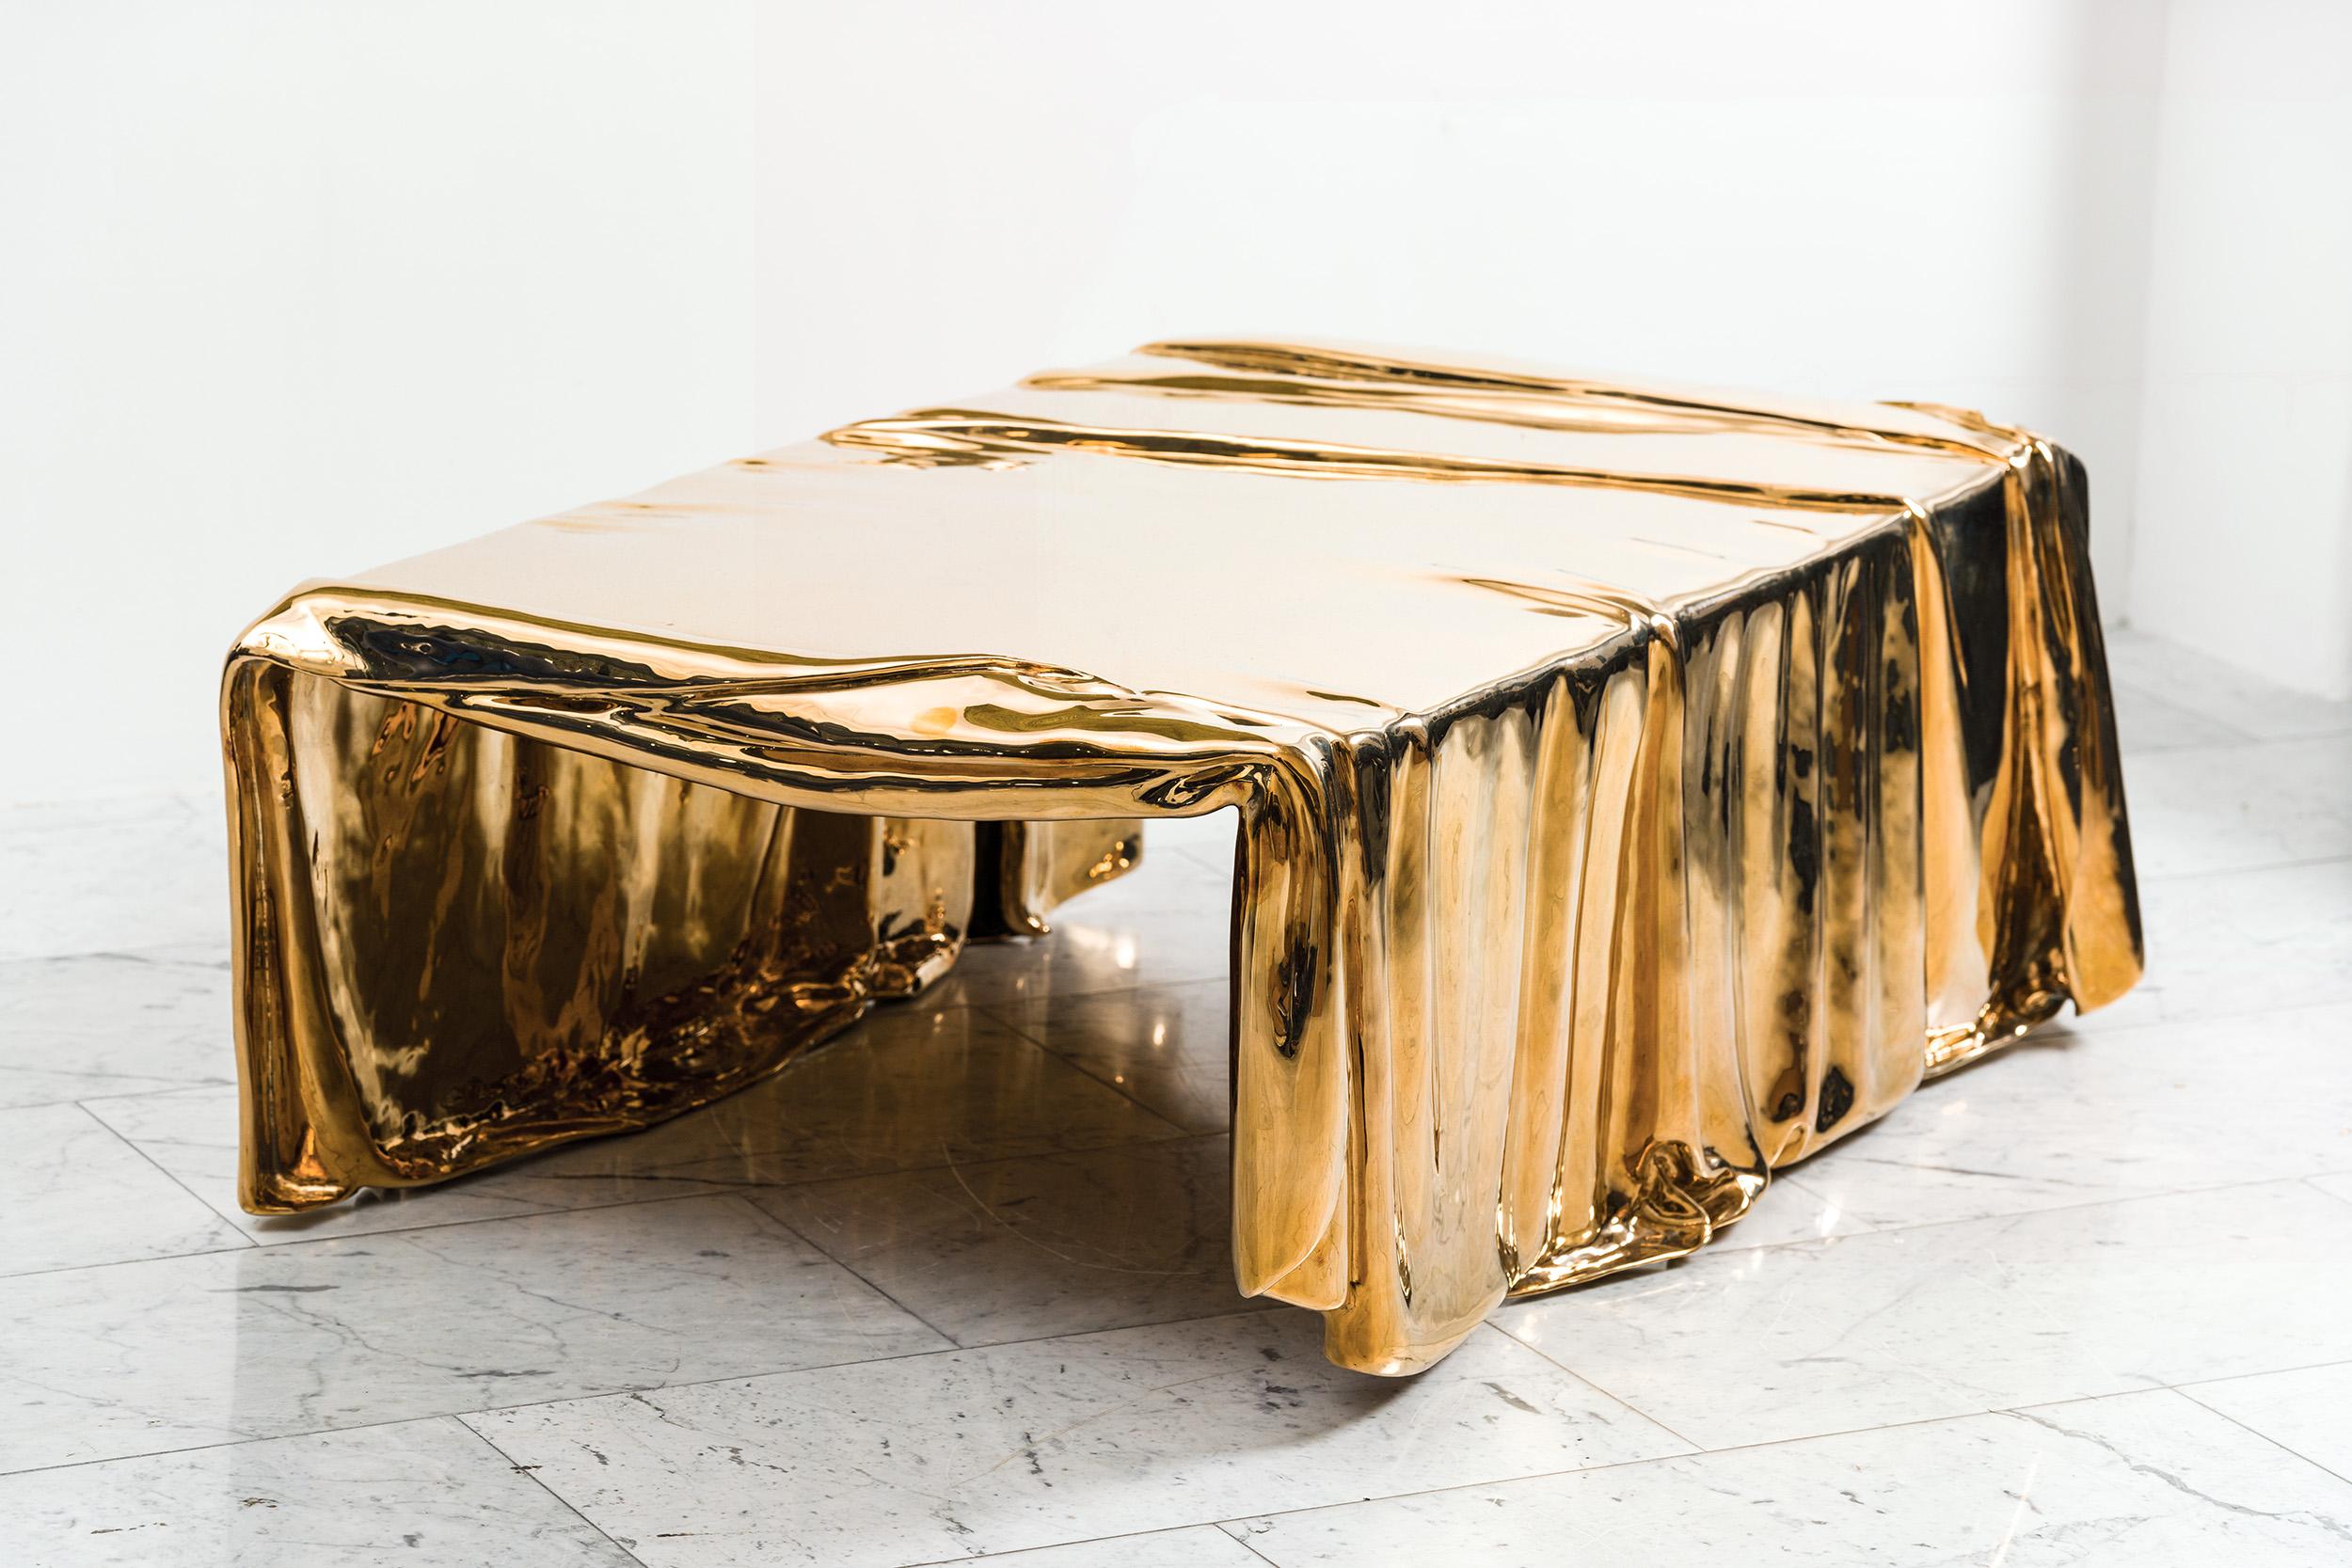 La table basse Vela, de la Collection S/One, incarne le design contemporain grâce à l'alliance unique du matériau et de la forme. Coulée dans le bronze, cette table basse donne l'illusion de la fluidité, avec une surface qui semble se draper et se